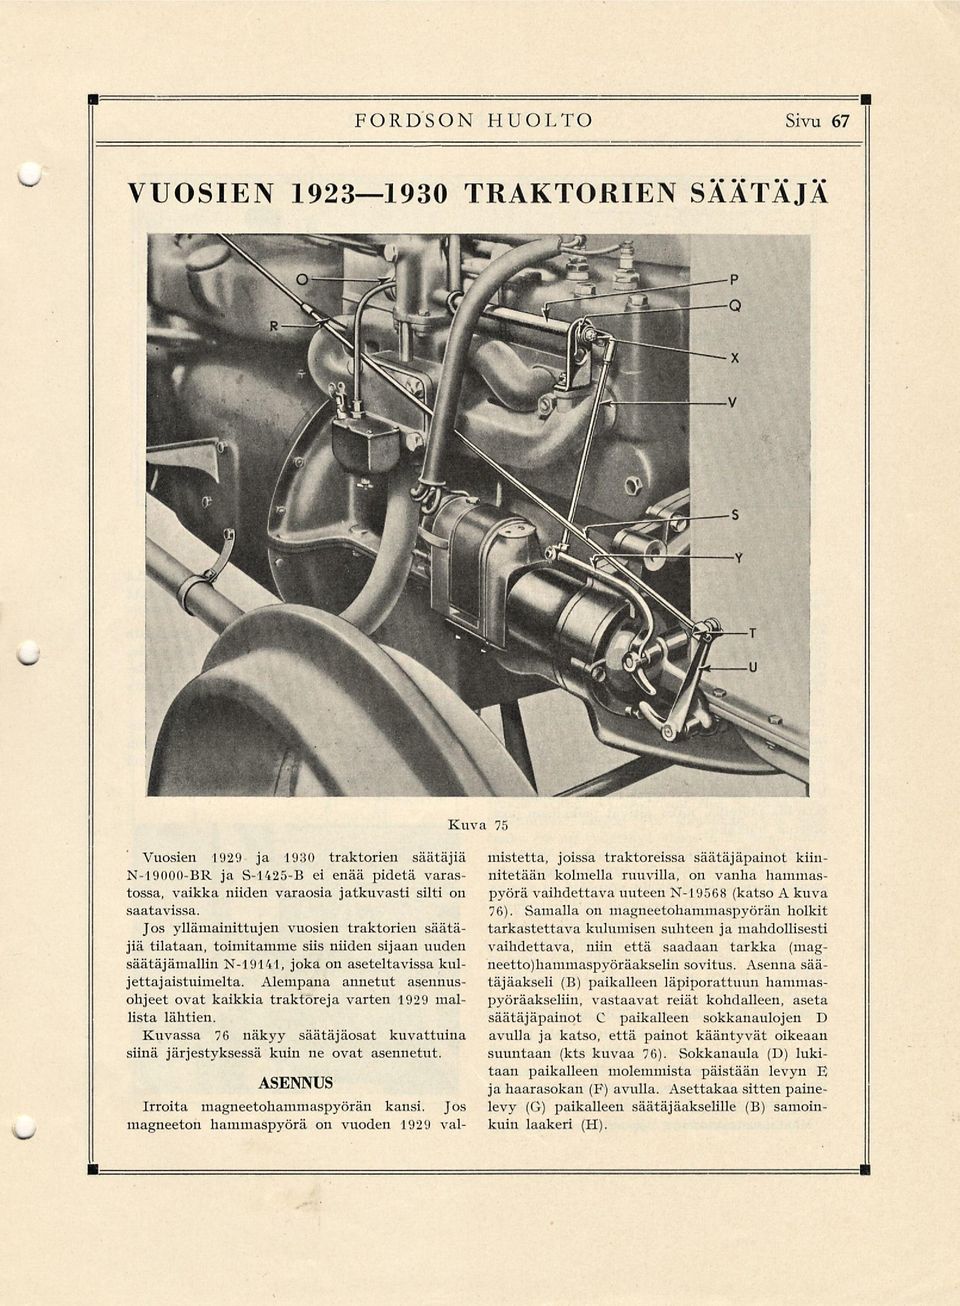 Alempana annetut asennusohjeet ovat kaikkia traktoreja varten 1929 mallista lähtien. Kuvassa 76 näkyy säätäjäosat kuvattuina siinä järjestyksessä kuin ne ovat asennetut.